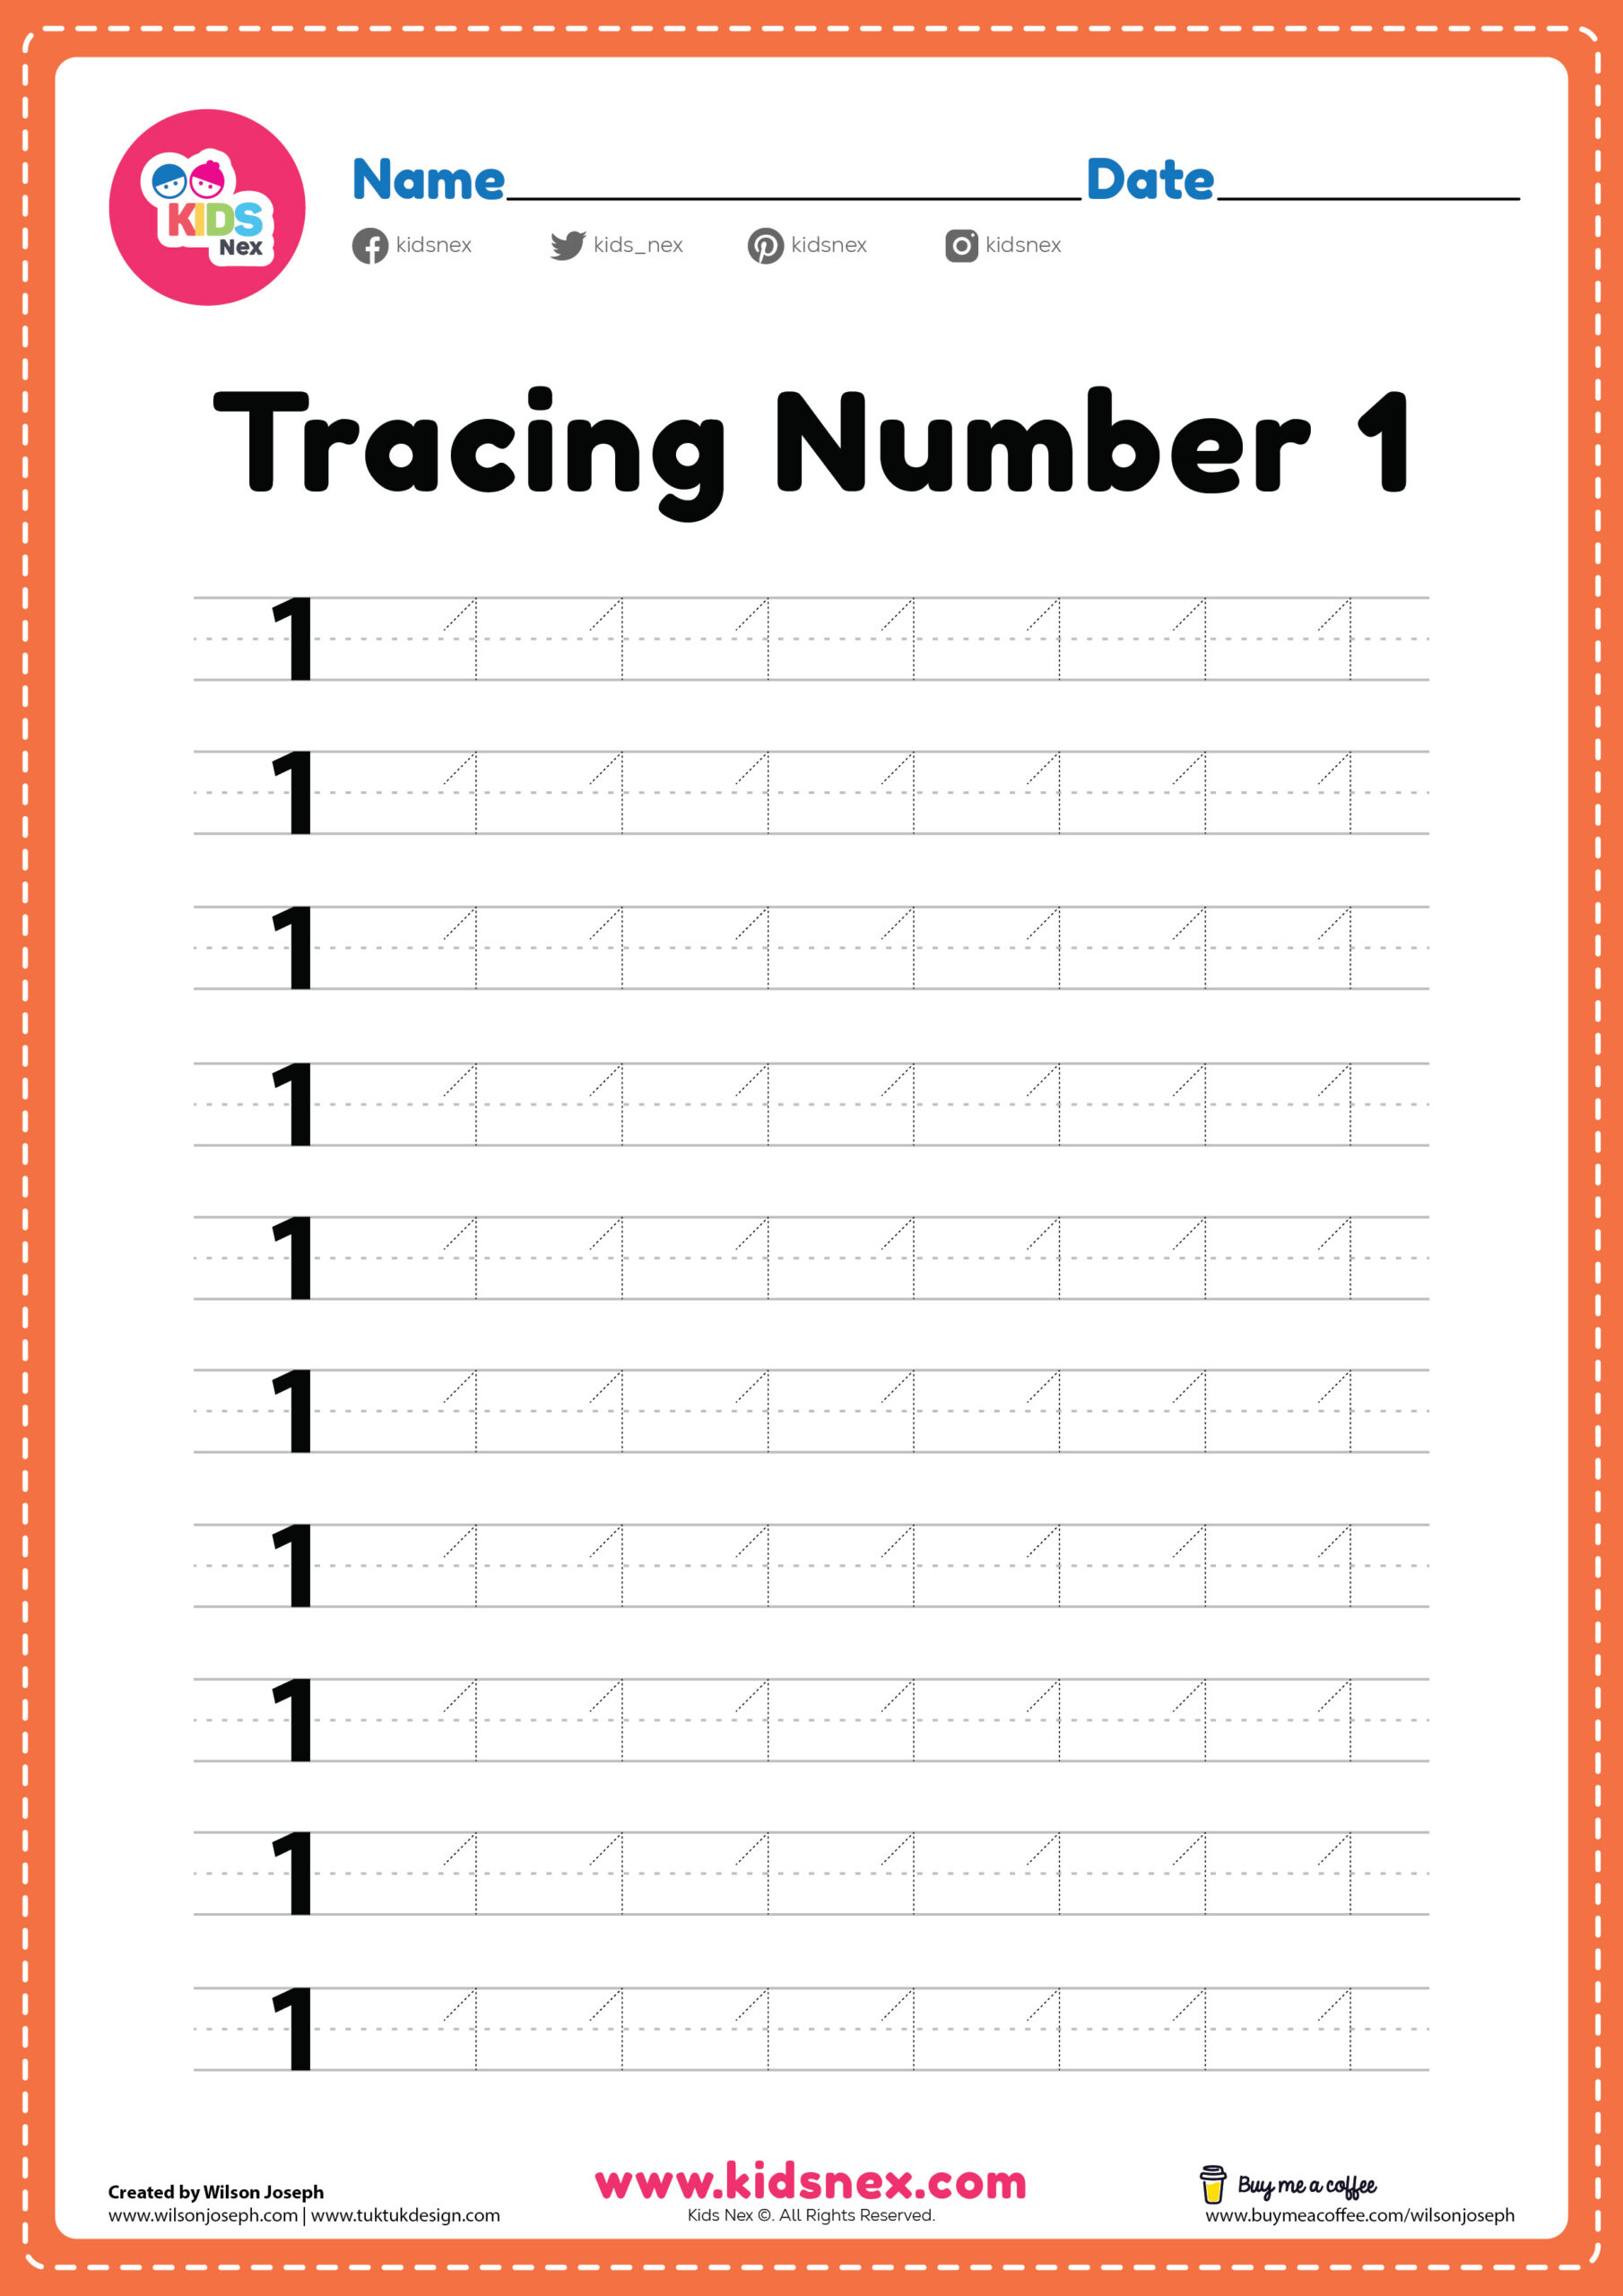 tracing-number-1-worksheet-free-printable-pdf